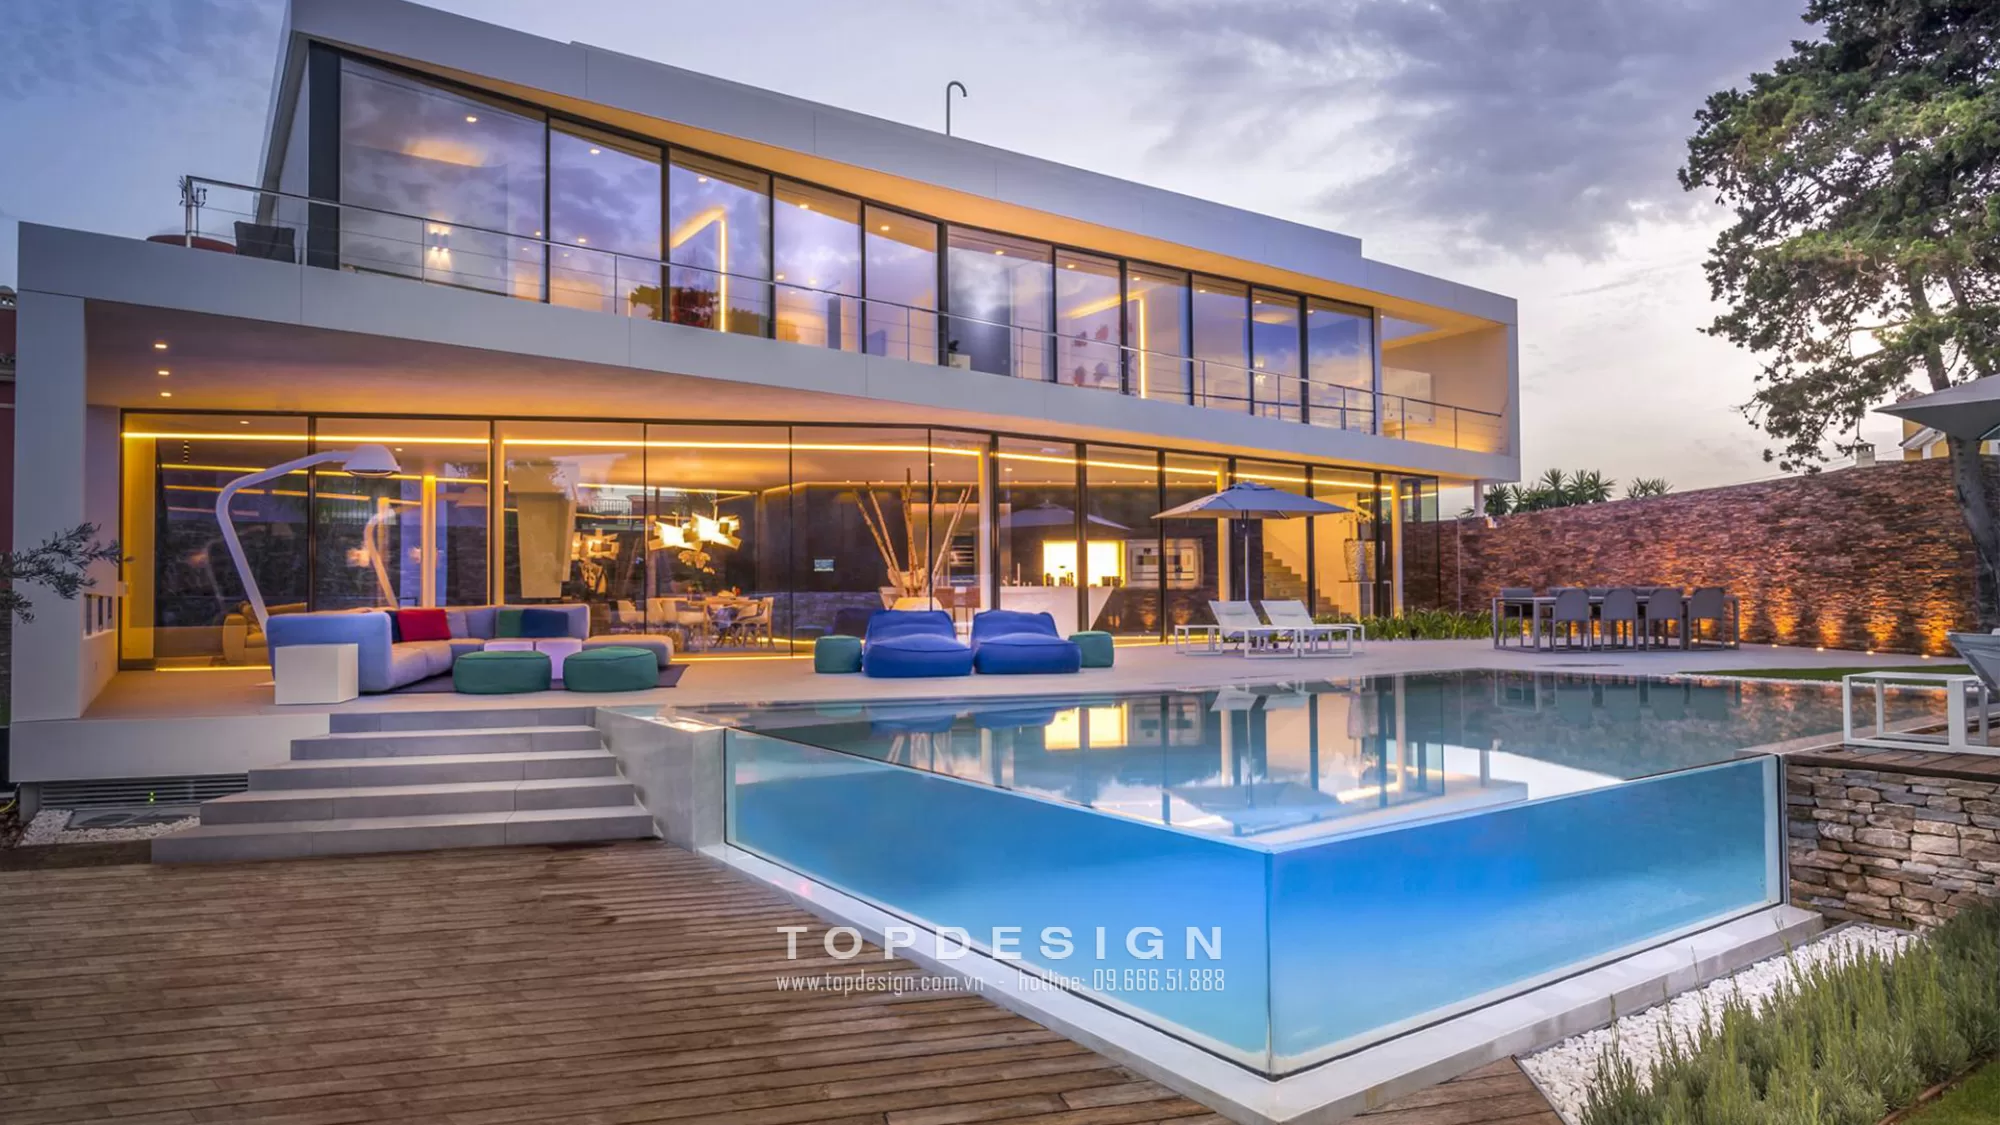 thiết kế nội thất biệt thự hiện đại có bể bơi - Topdesign -j2